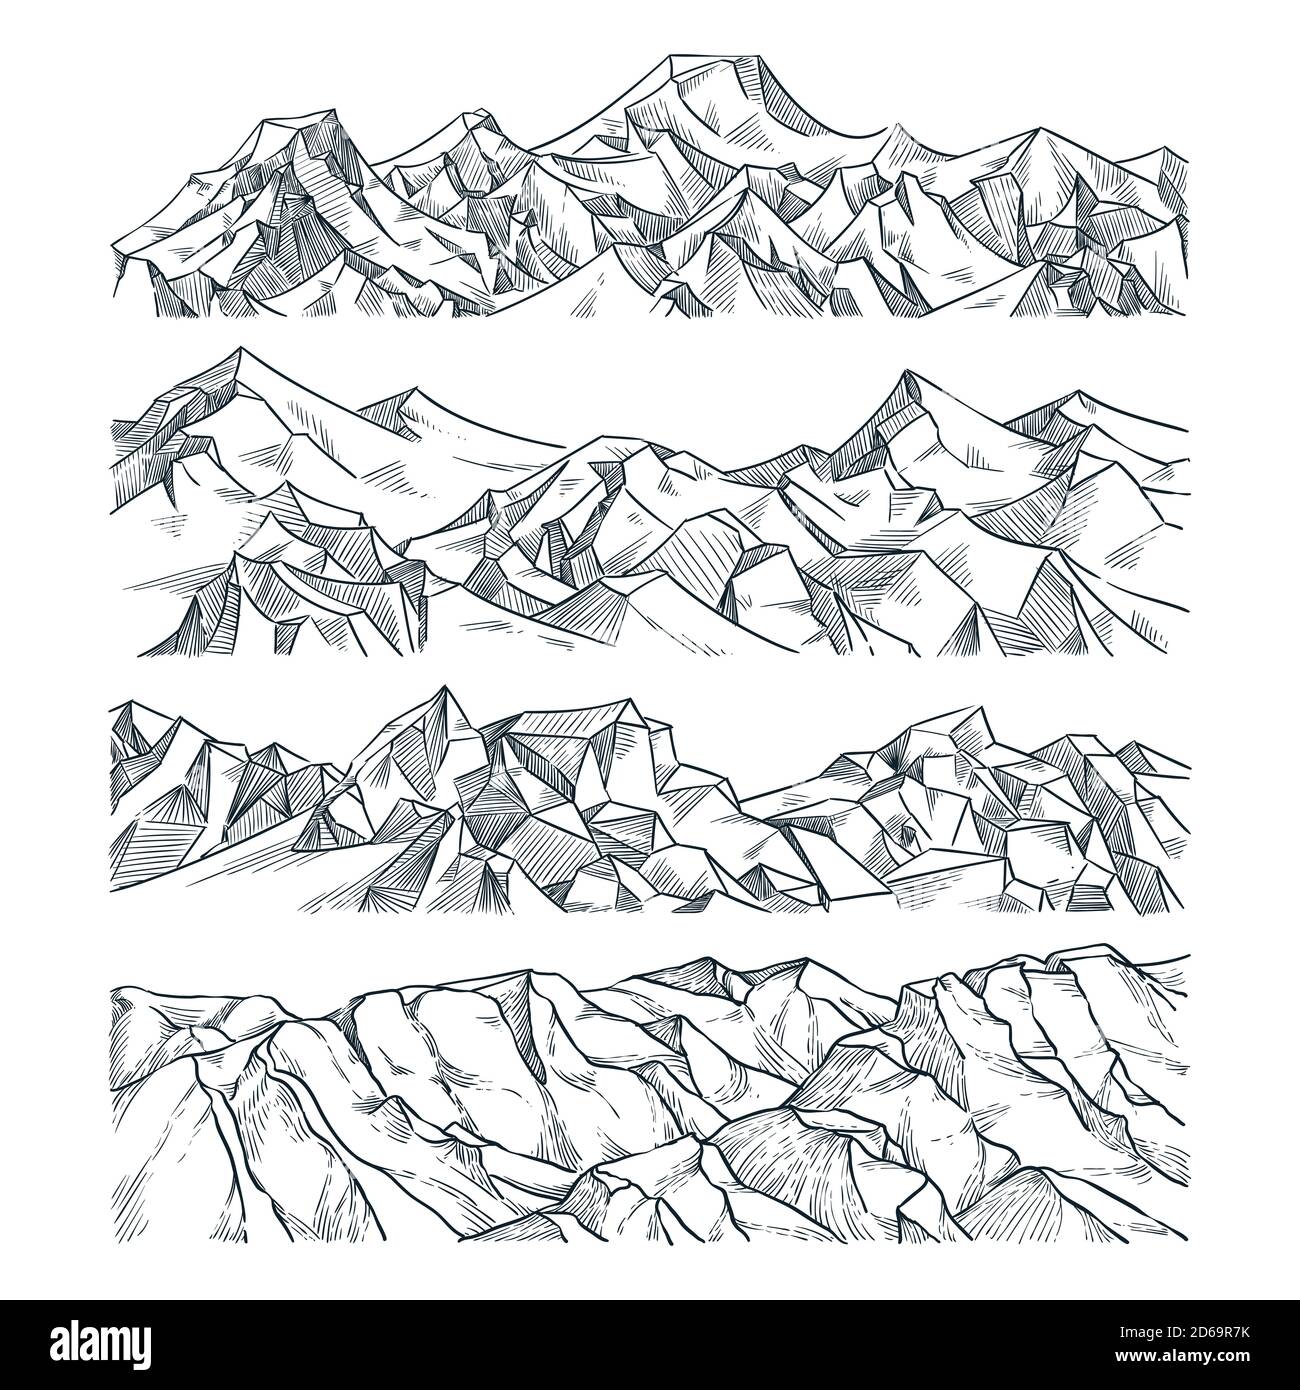 Berge und Felsen horizontale Landschaft gesetzt. Vektorgrafik Skizze. Hand gezeichnete Berggipfel, Hügel, isoliert auf weißem Hintergrund. Reisen, übertrumpfer Stock Vektor